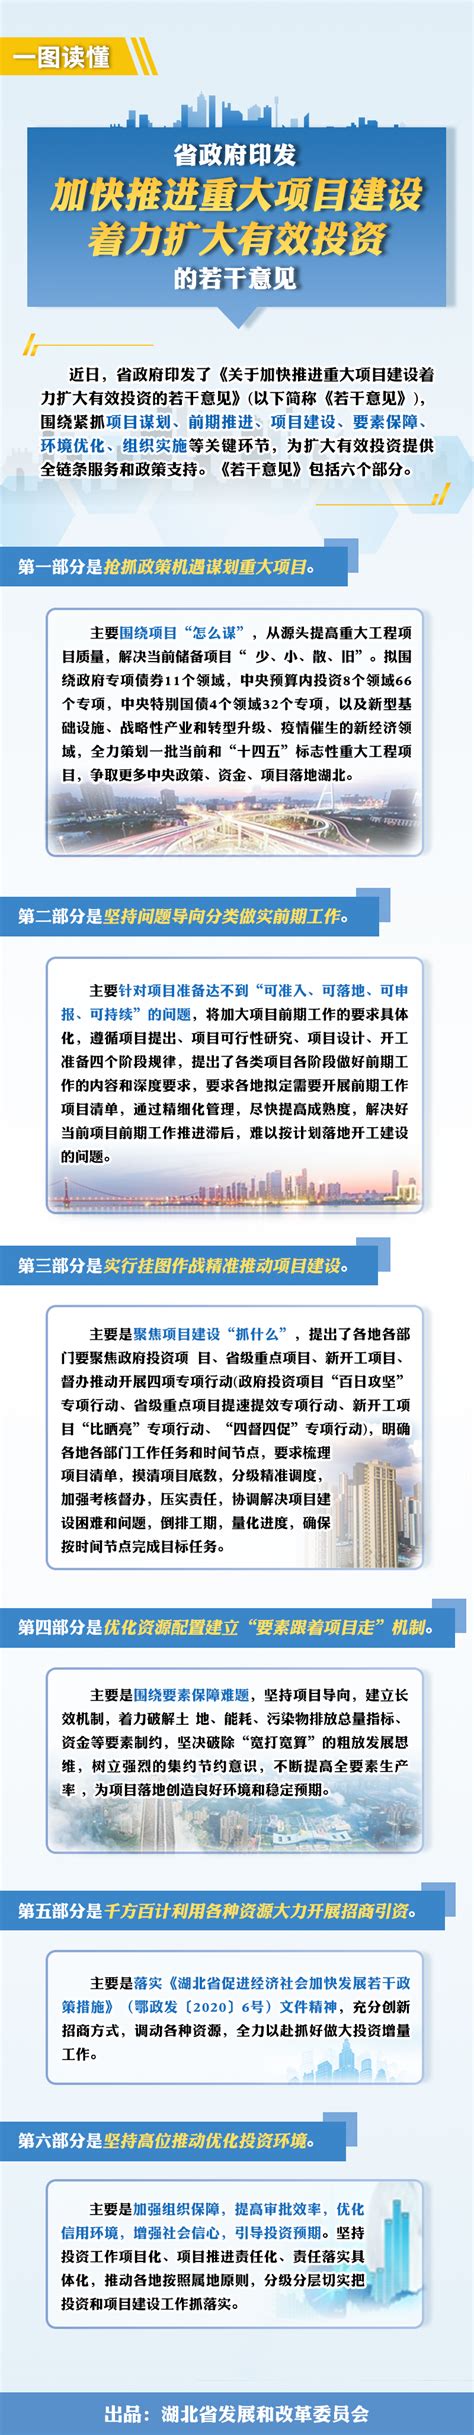 省统计局发布一季度湖南经济形势相关数据_家装要闻_家居频道